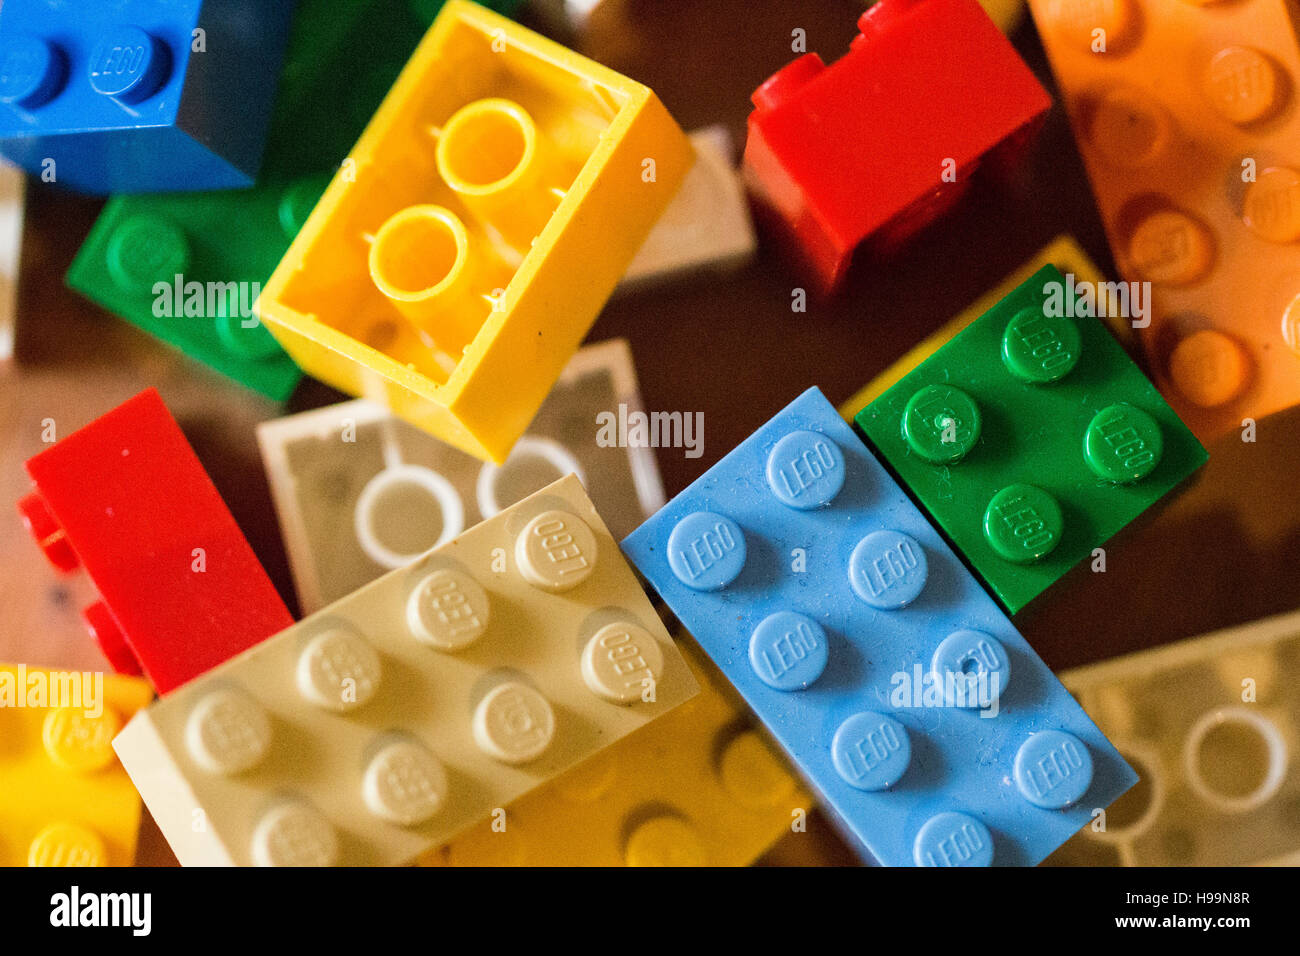 Mattoni di lego immagini e fotografie stock ad alta risoluzione - Alamy